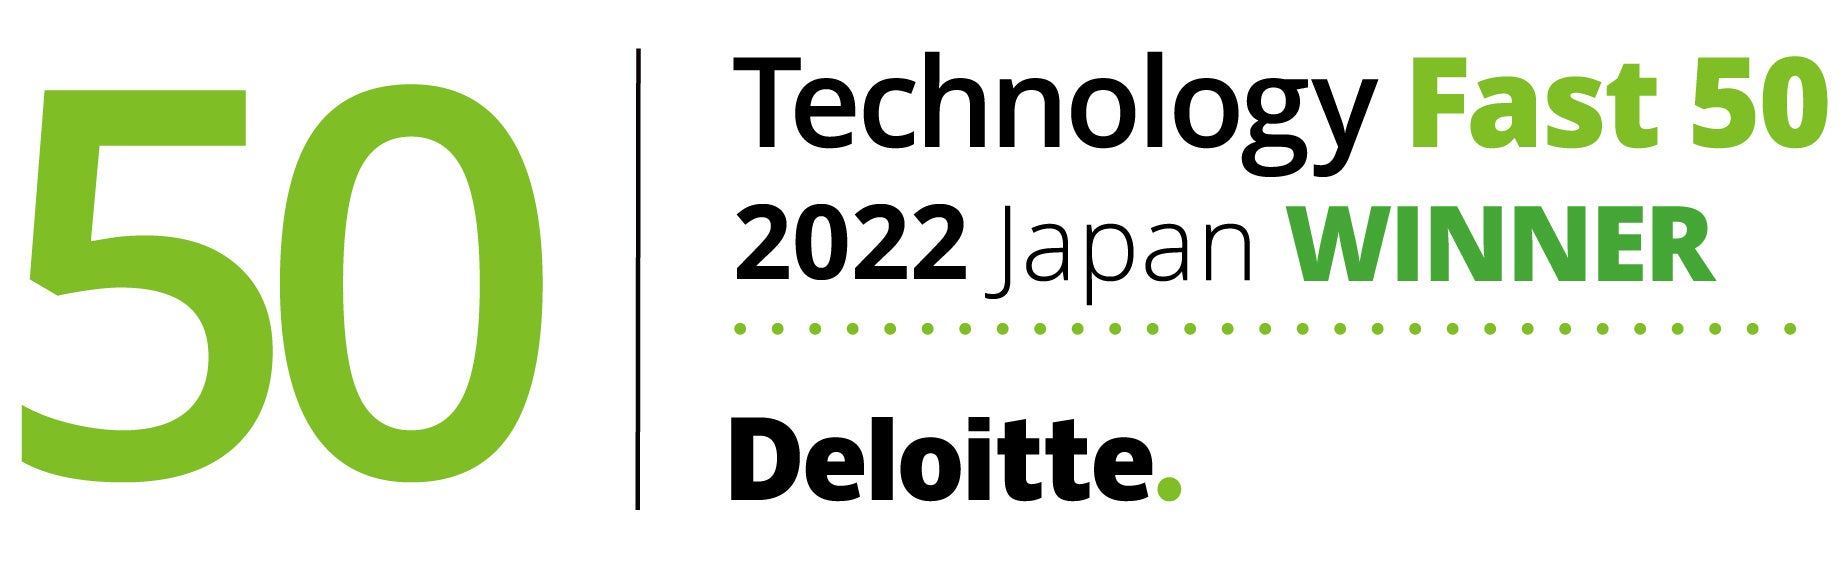 アソビュー、デロイト トーマツ テクノロジー企業成長率ランキング「Technology Fast 50 2022 Japan」において、16位を受賞。